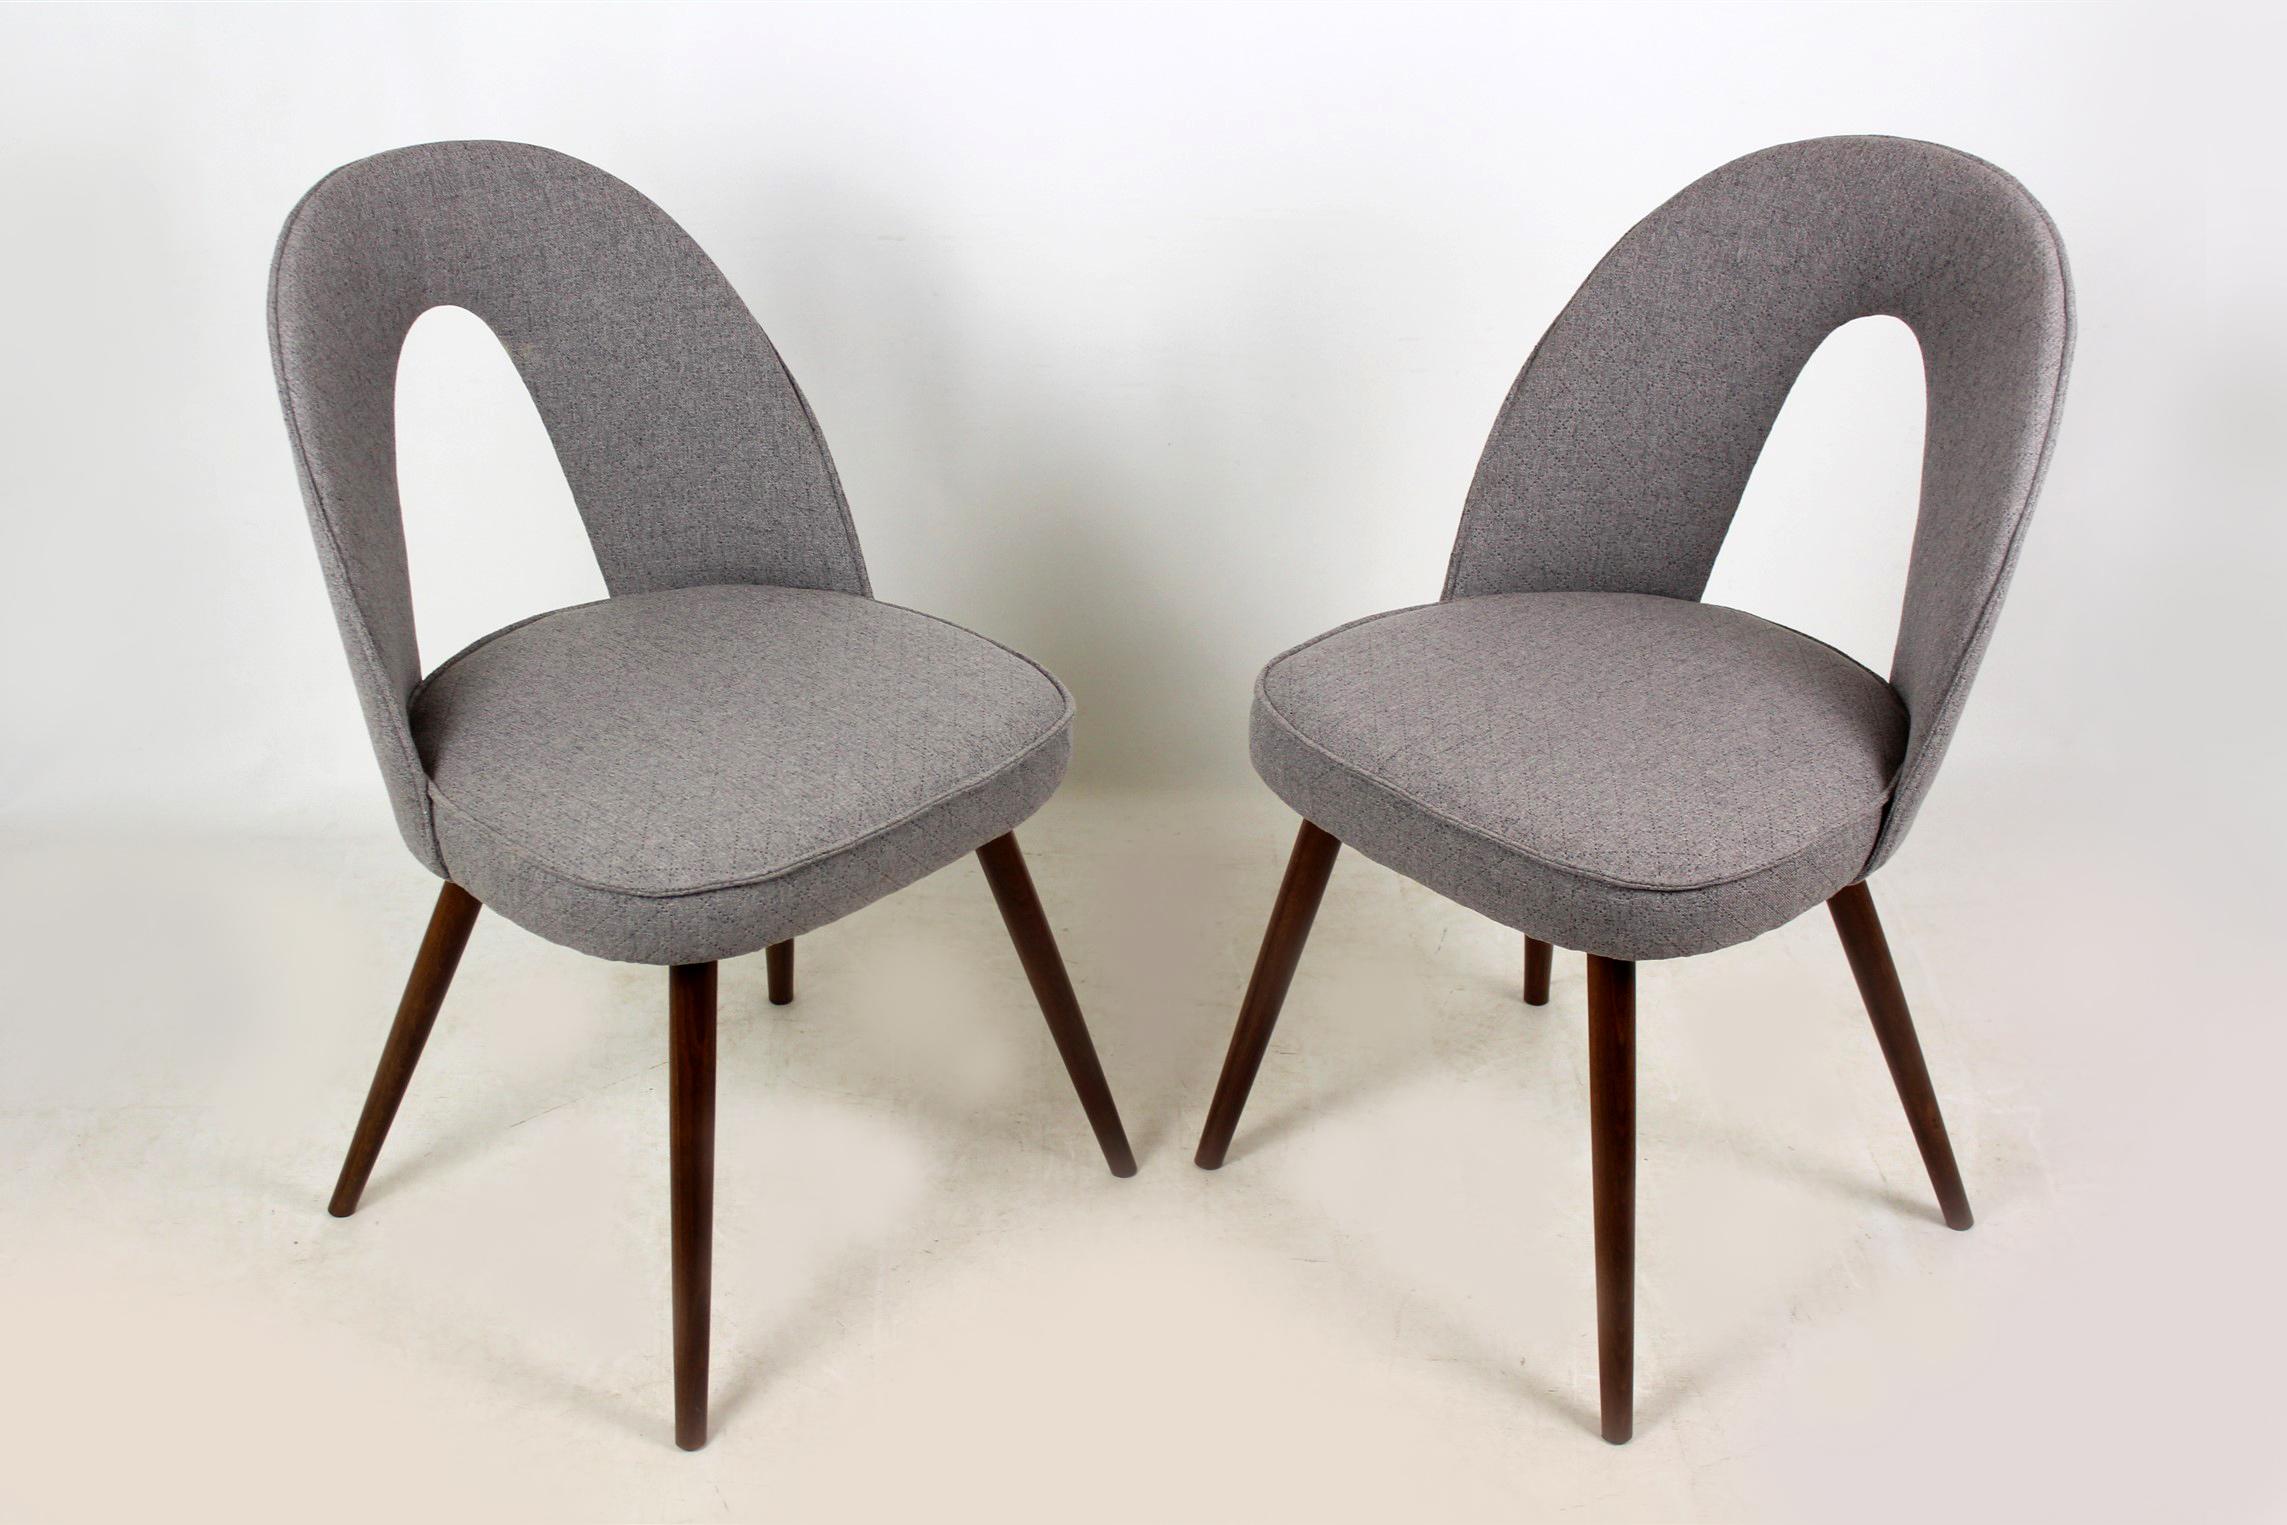 Ensemble de deux chaises produites vers 1960 dans l'ancienne Tchécoslovaquie et conçues par Antonin Suman pour Tatra. Revêtu d'une nouvelle sellerie en tissu gris.